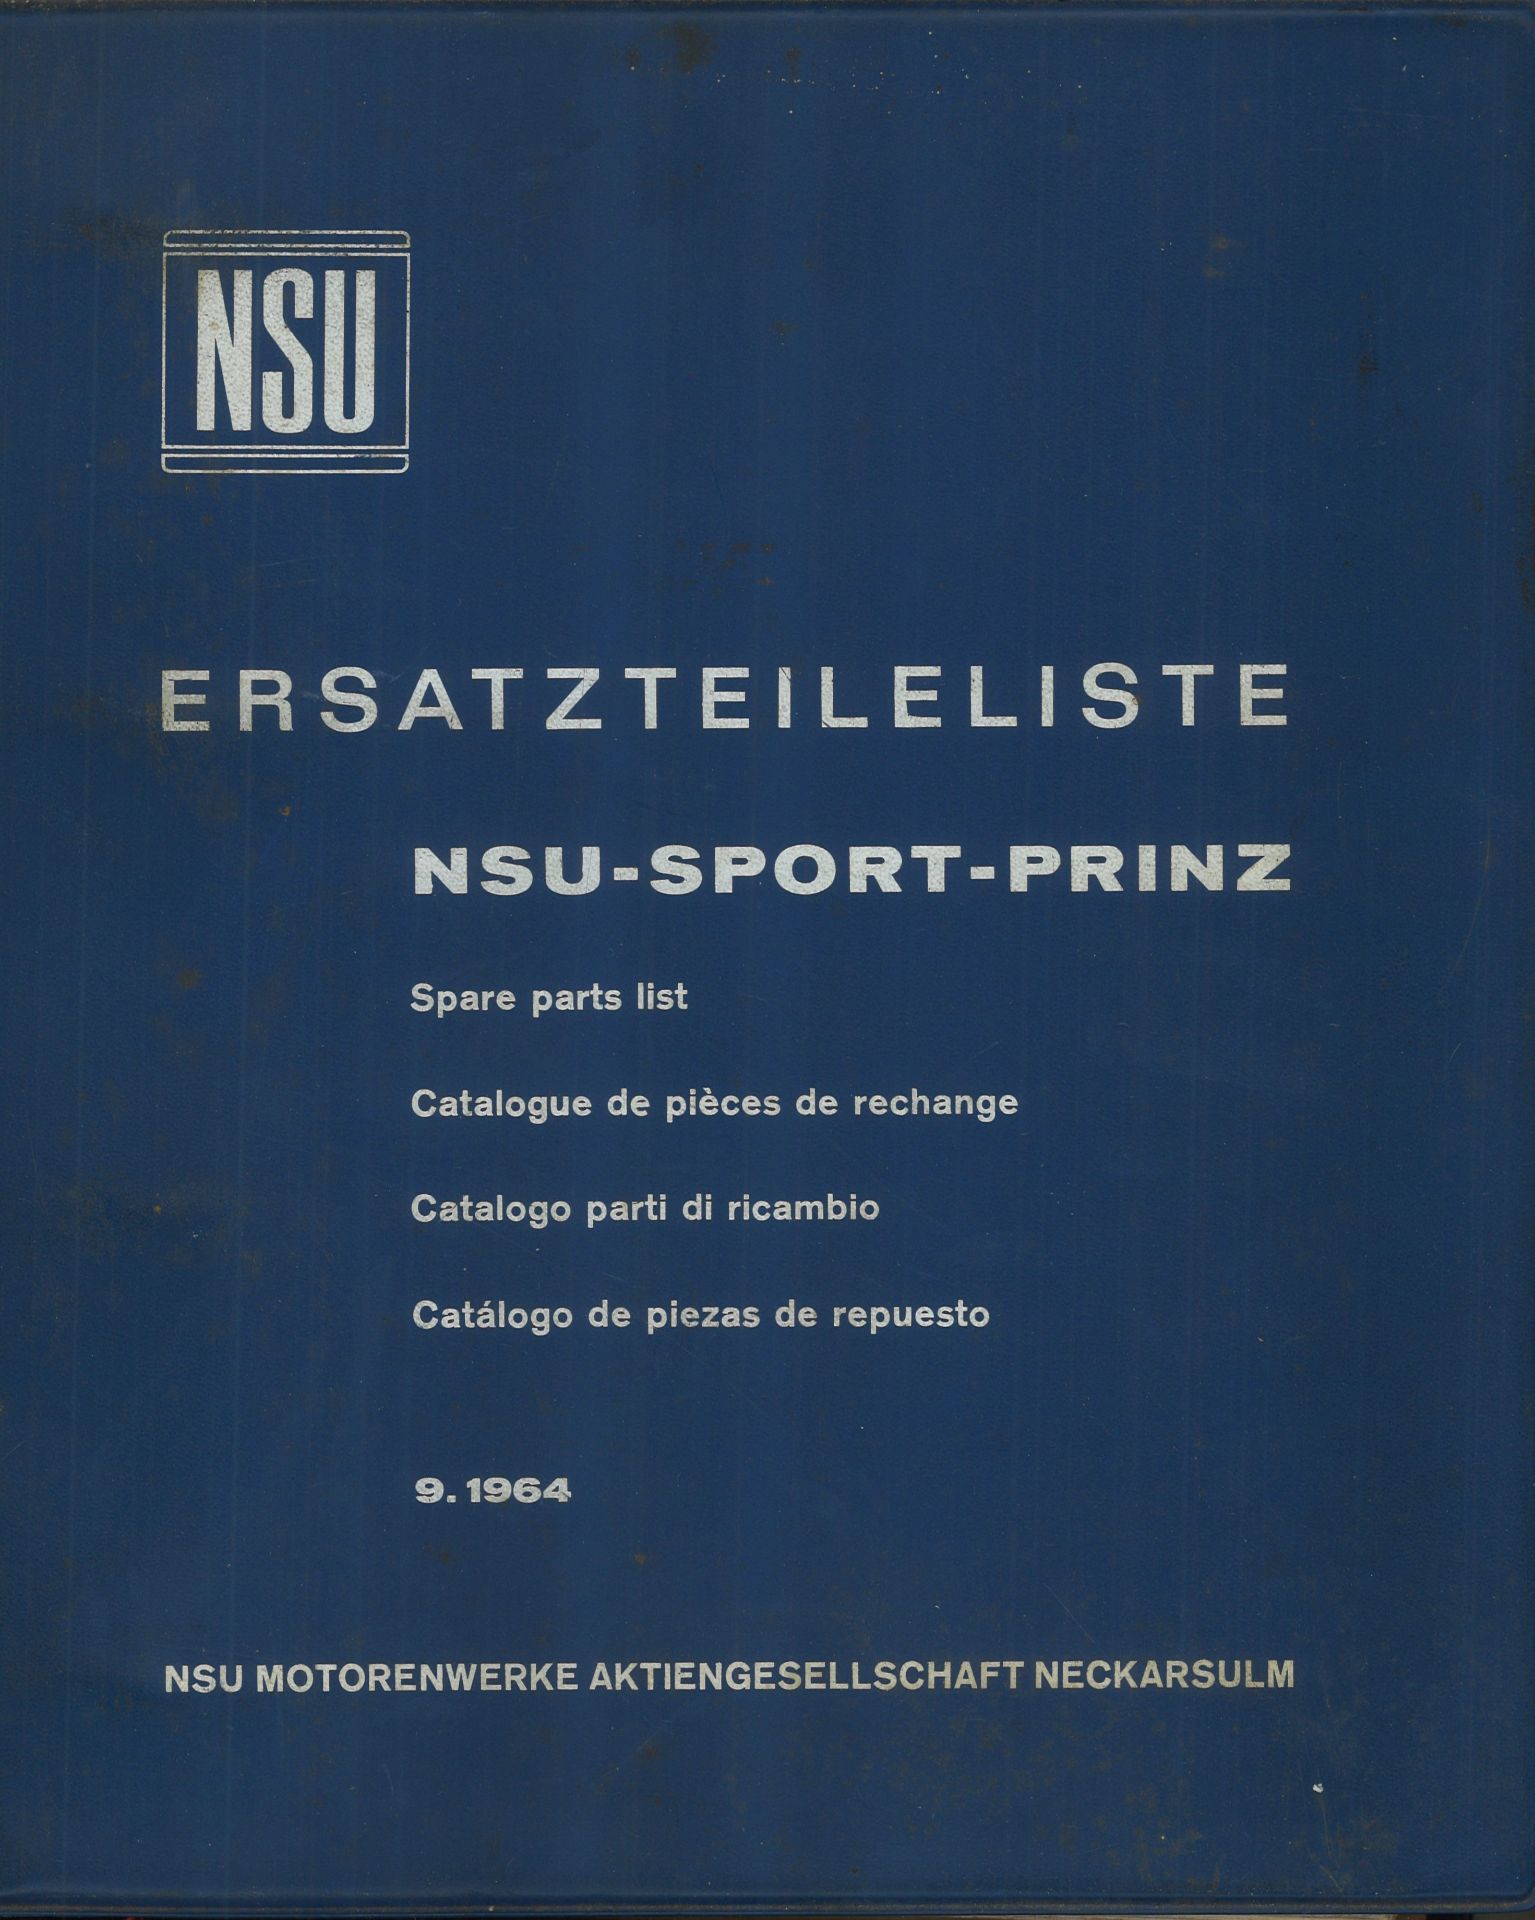 Aus Oldtimer Sammlung! NSU Ersatzteileliste "NSU - SPORT - PRINZ" 9.1964. NSU Motorwerke